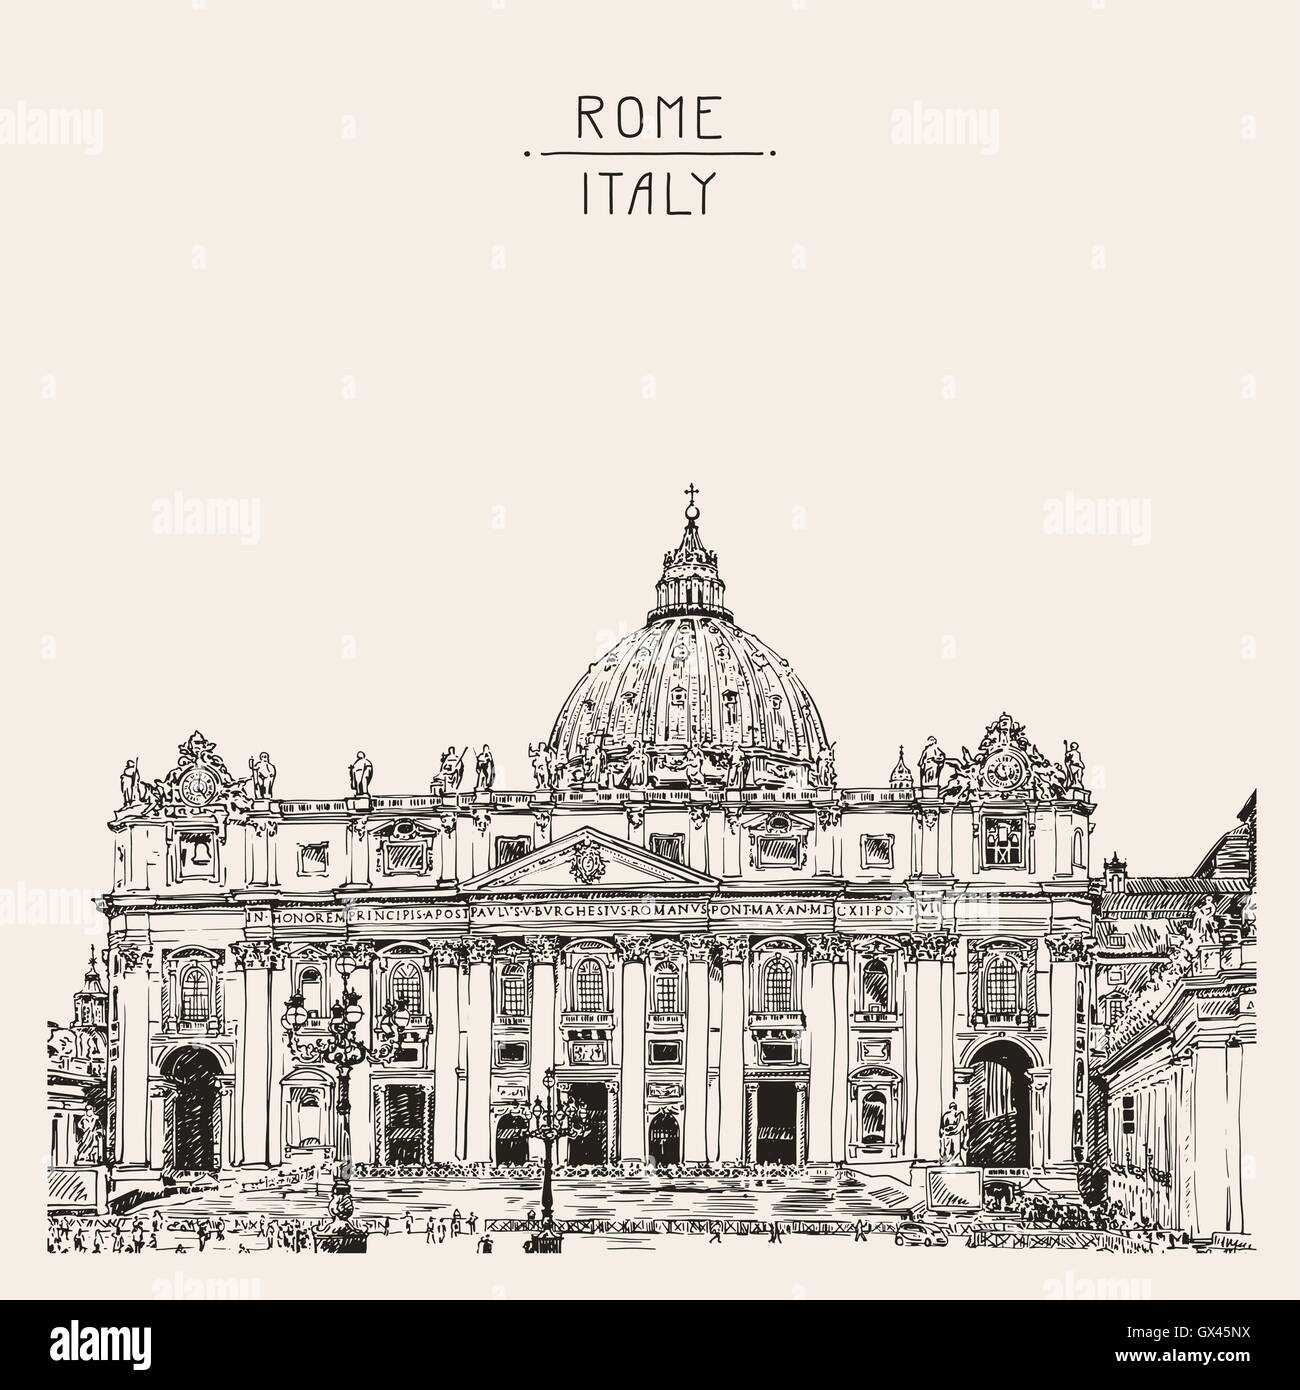 La cathédrale Saint-Pierre, Rome, Vatican, Italie. Dessin à la main Illustration de Vecteur